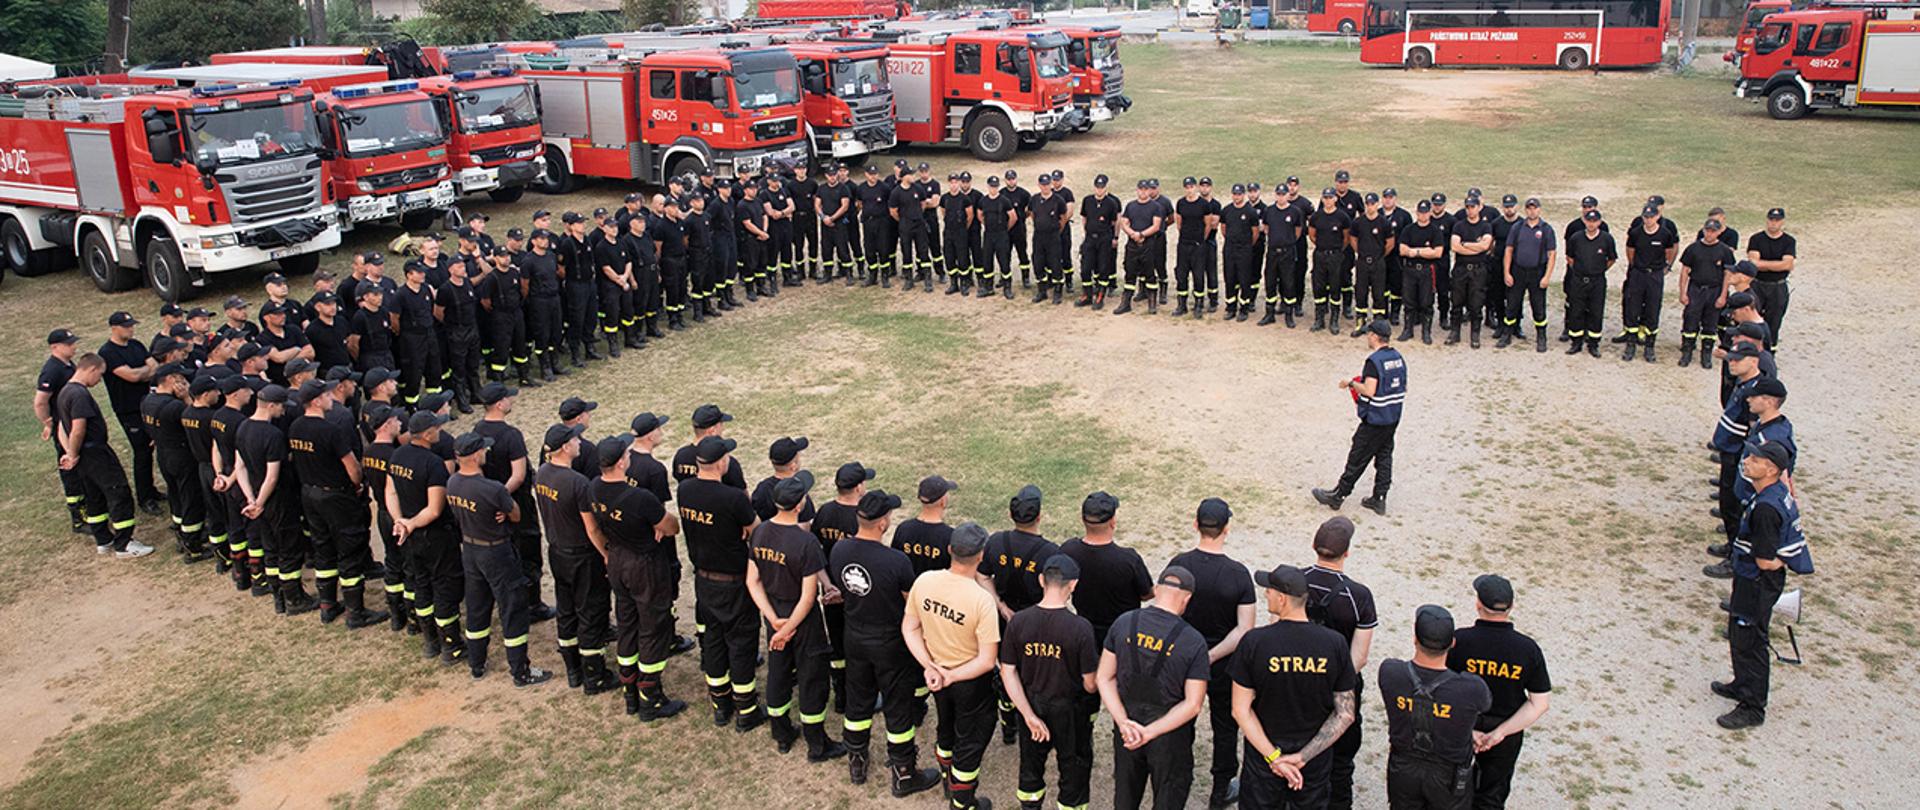 Funkcjonariusze Państwowej Straży Pożarnej na wyspie Evia. W tle stoją wozy strażackie.